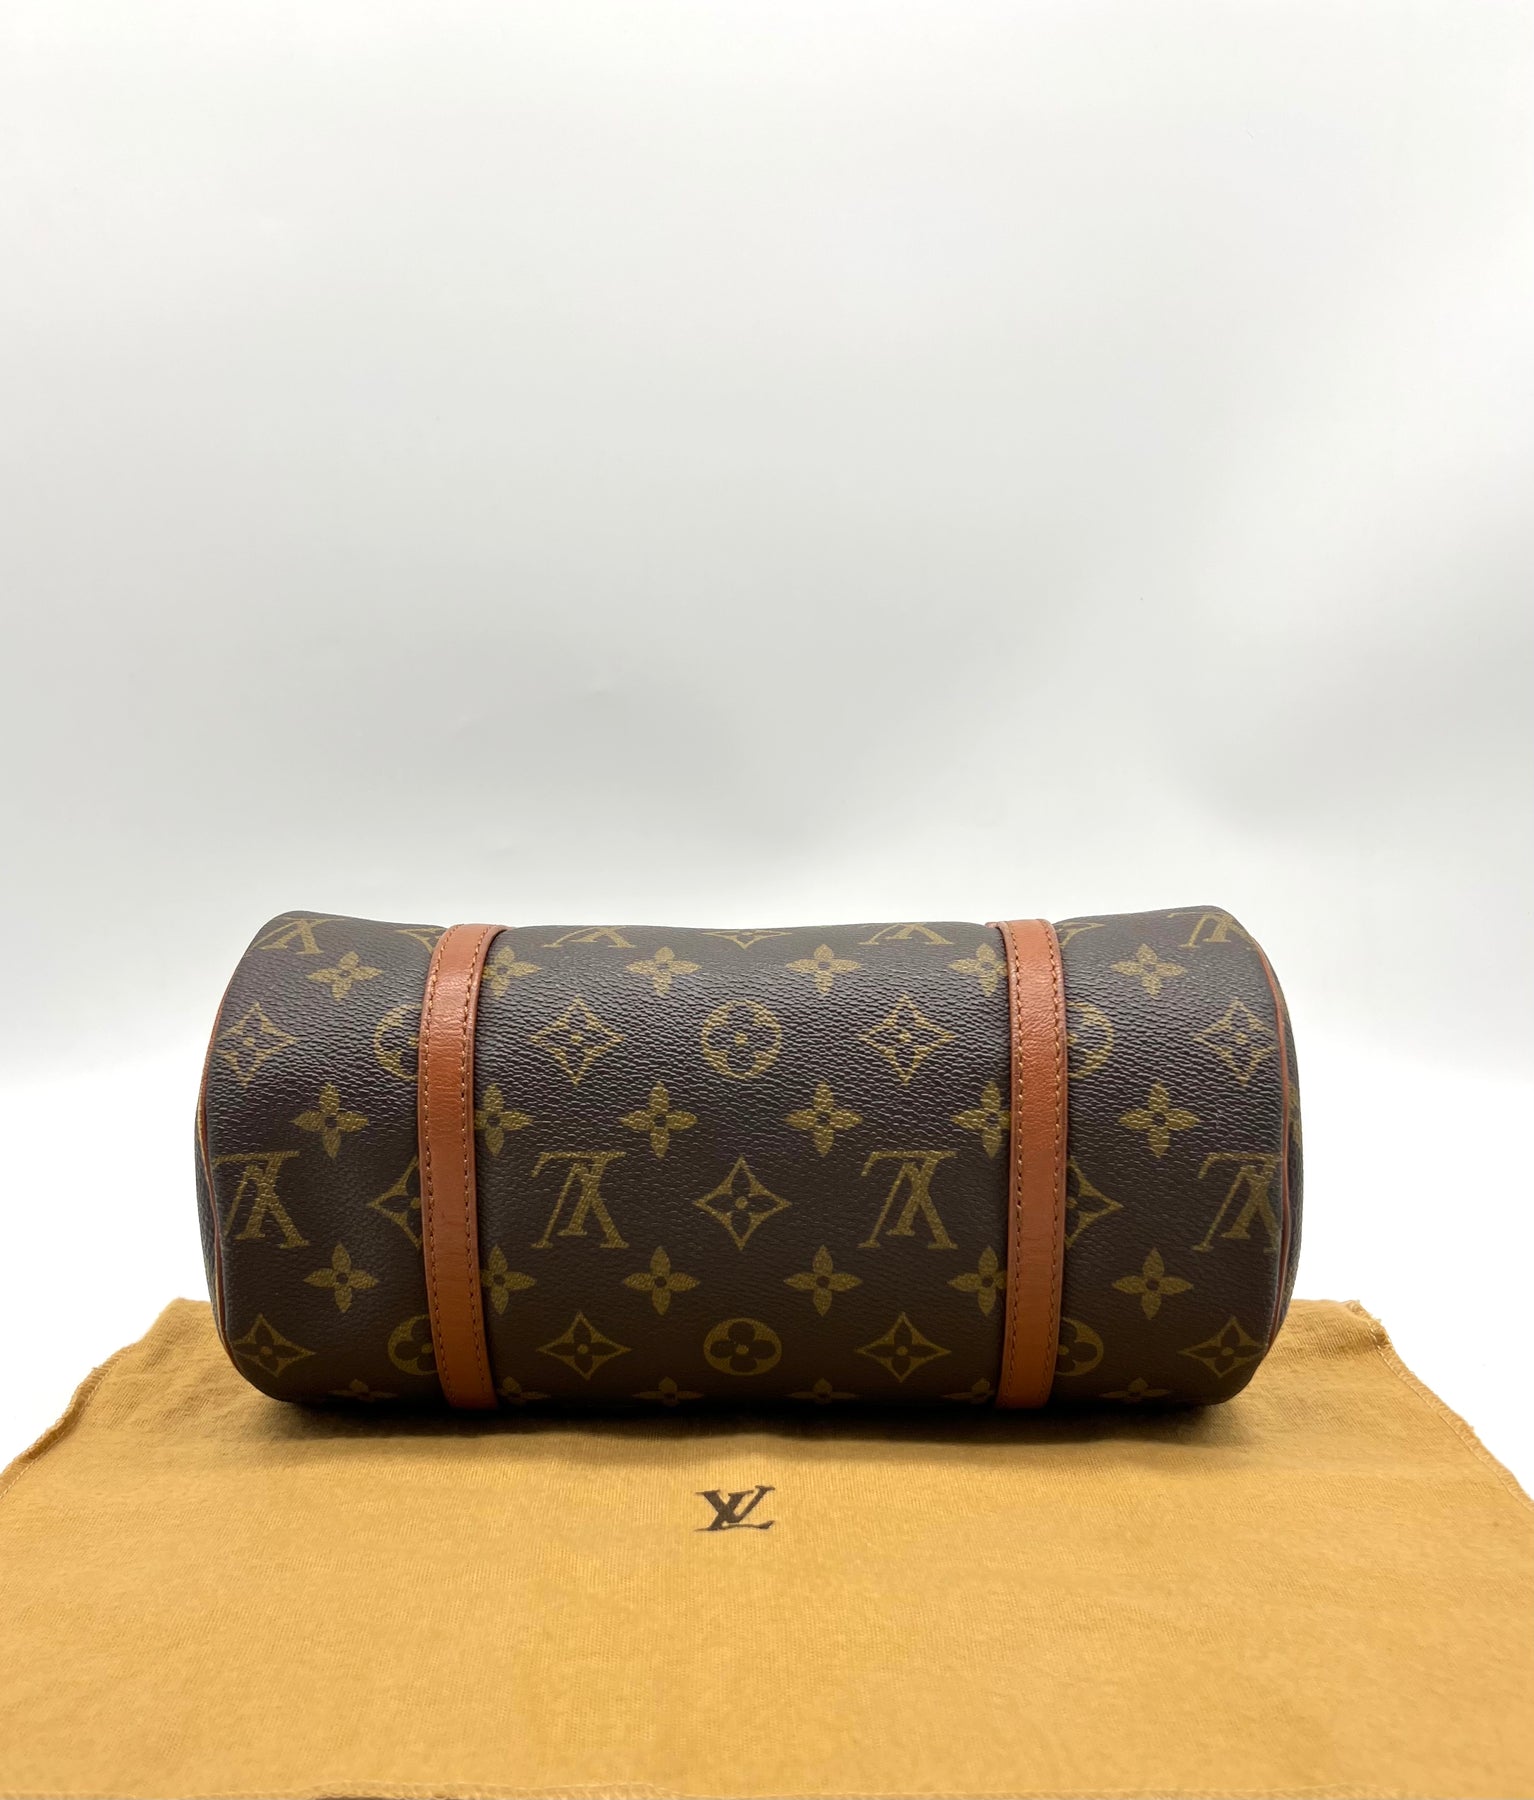 Authentic Louis Vuitton Papillon 26 Monogram M51366 Barrel Bag